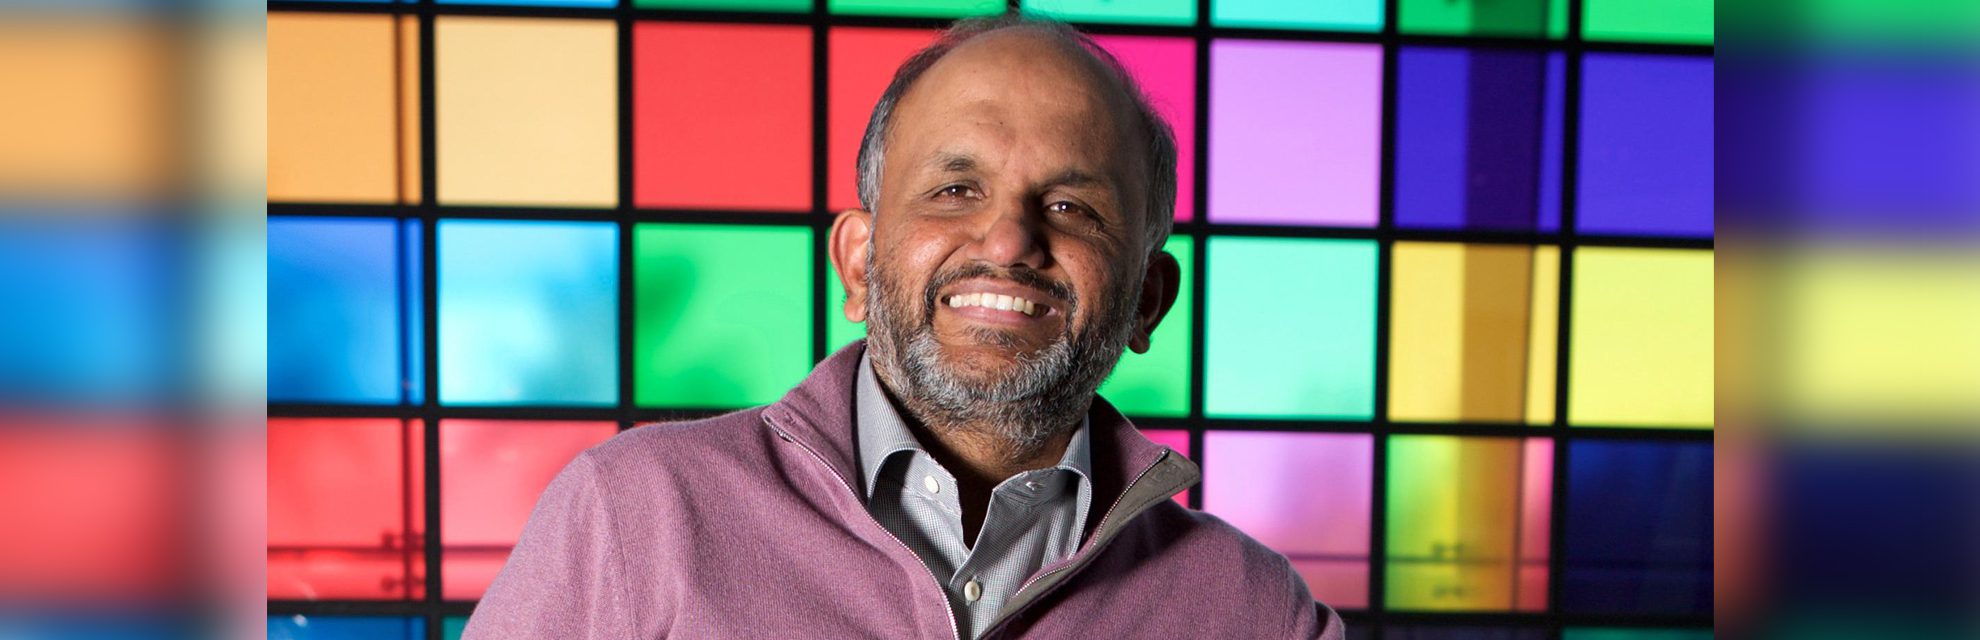 Shantanu Narayen : Le PDG qui est le cœur et l'âme d'Adobe